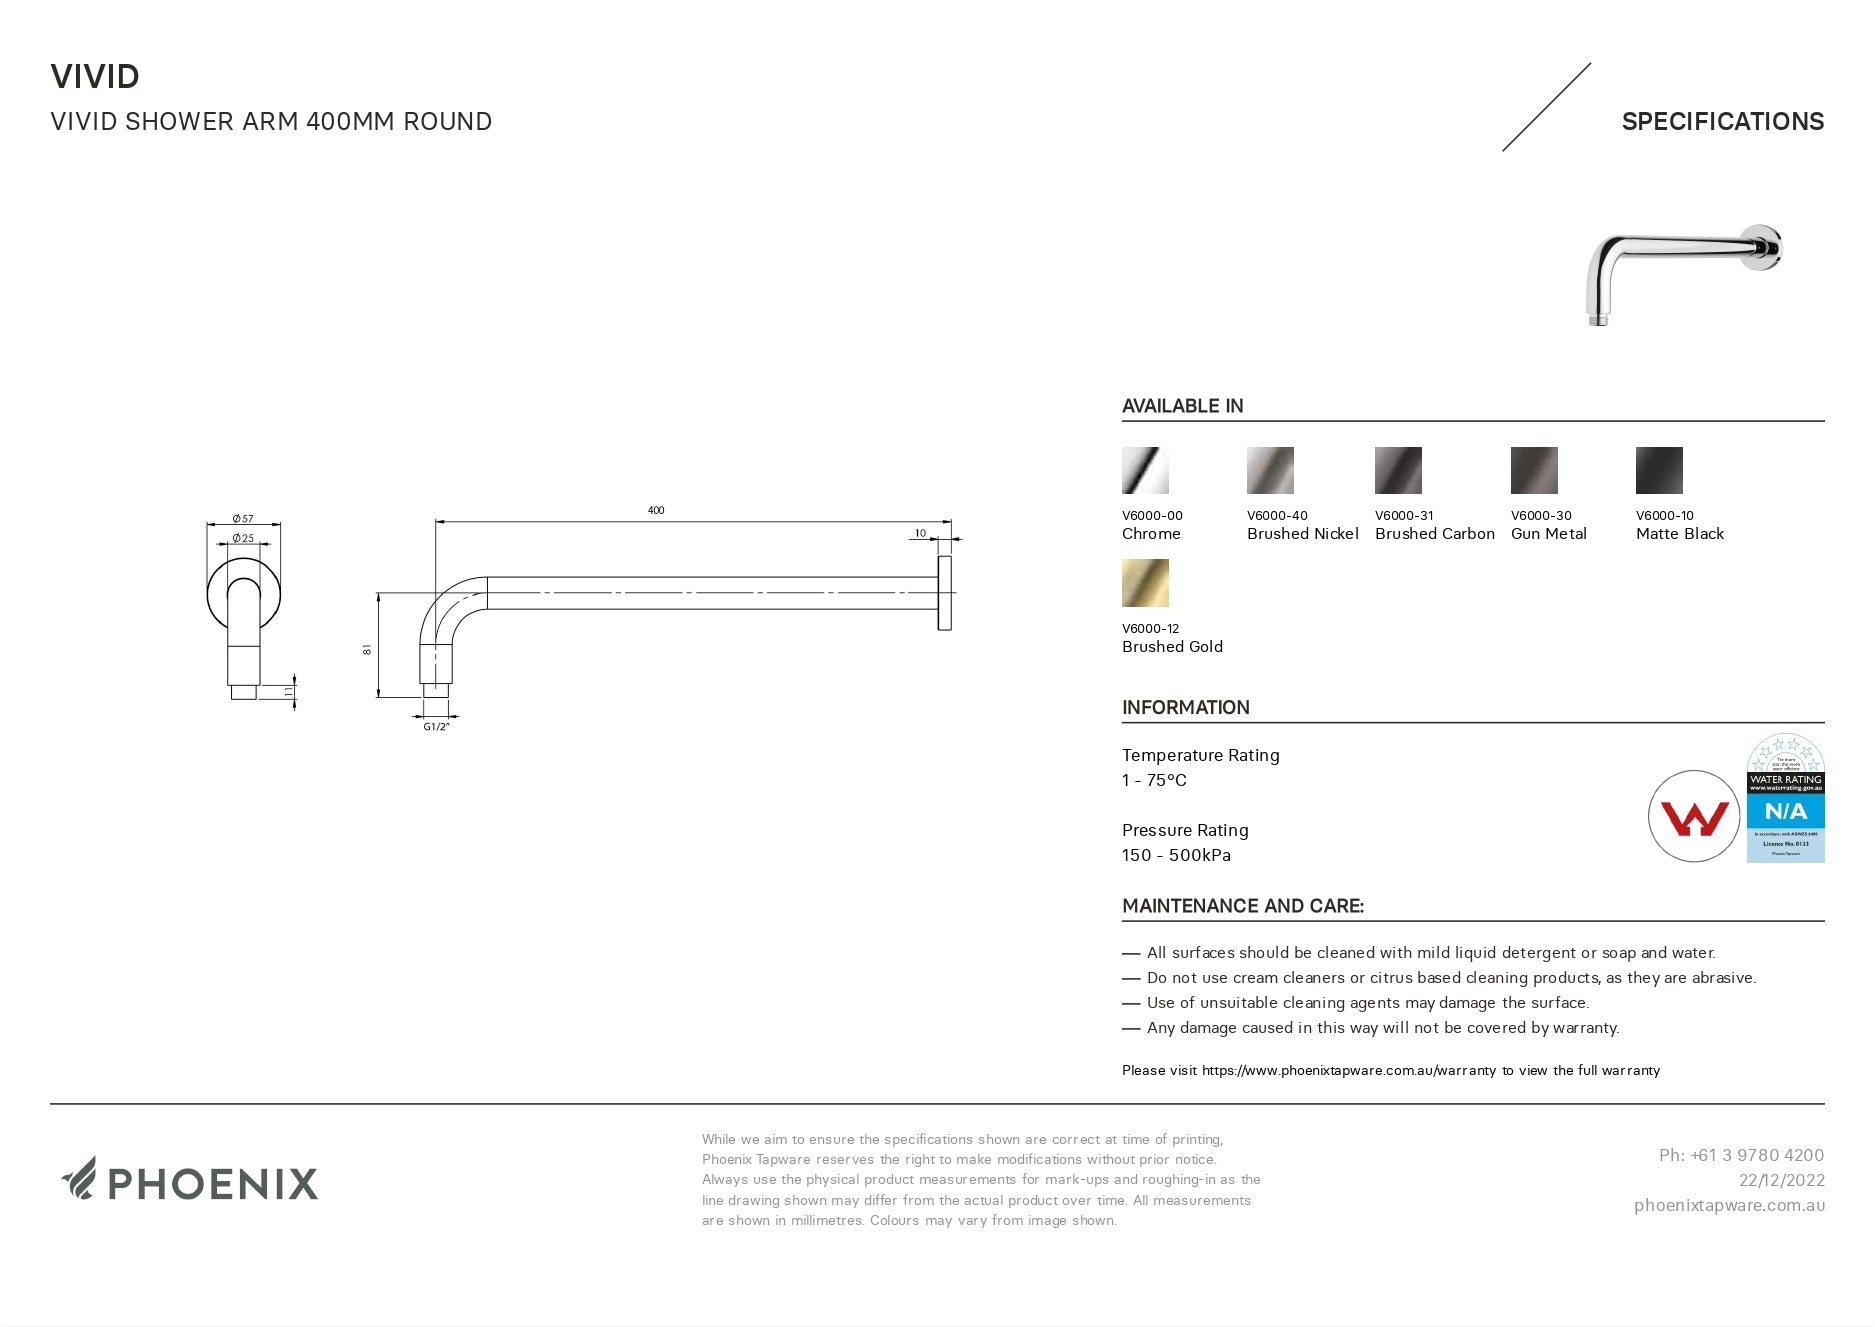 PHOENIX VIVID SHOWER ARM ROUND 400MM GUN METAL